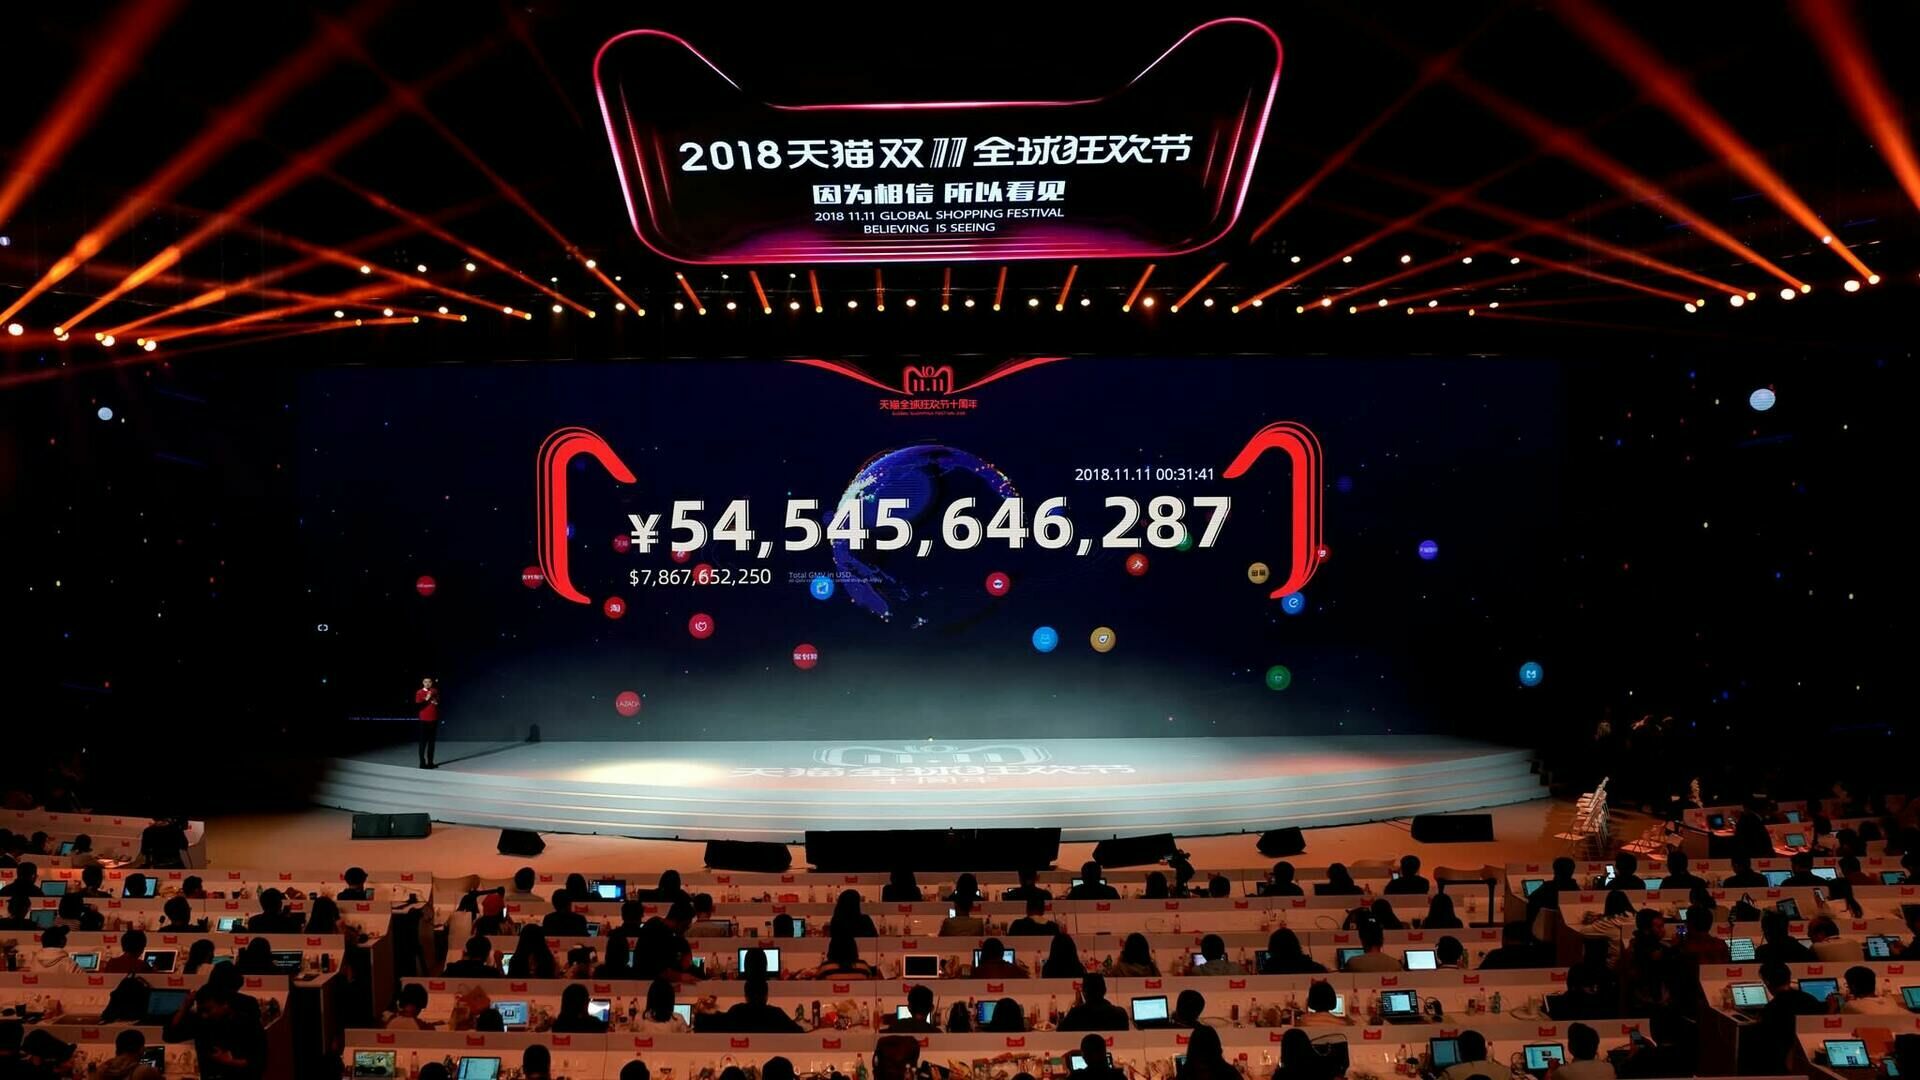 День холостяка принес рекордную выручку Alibaba